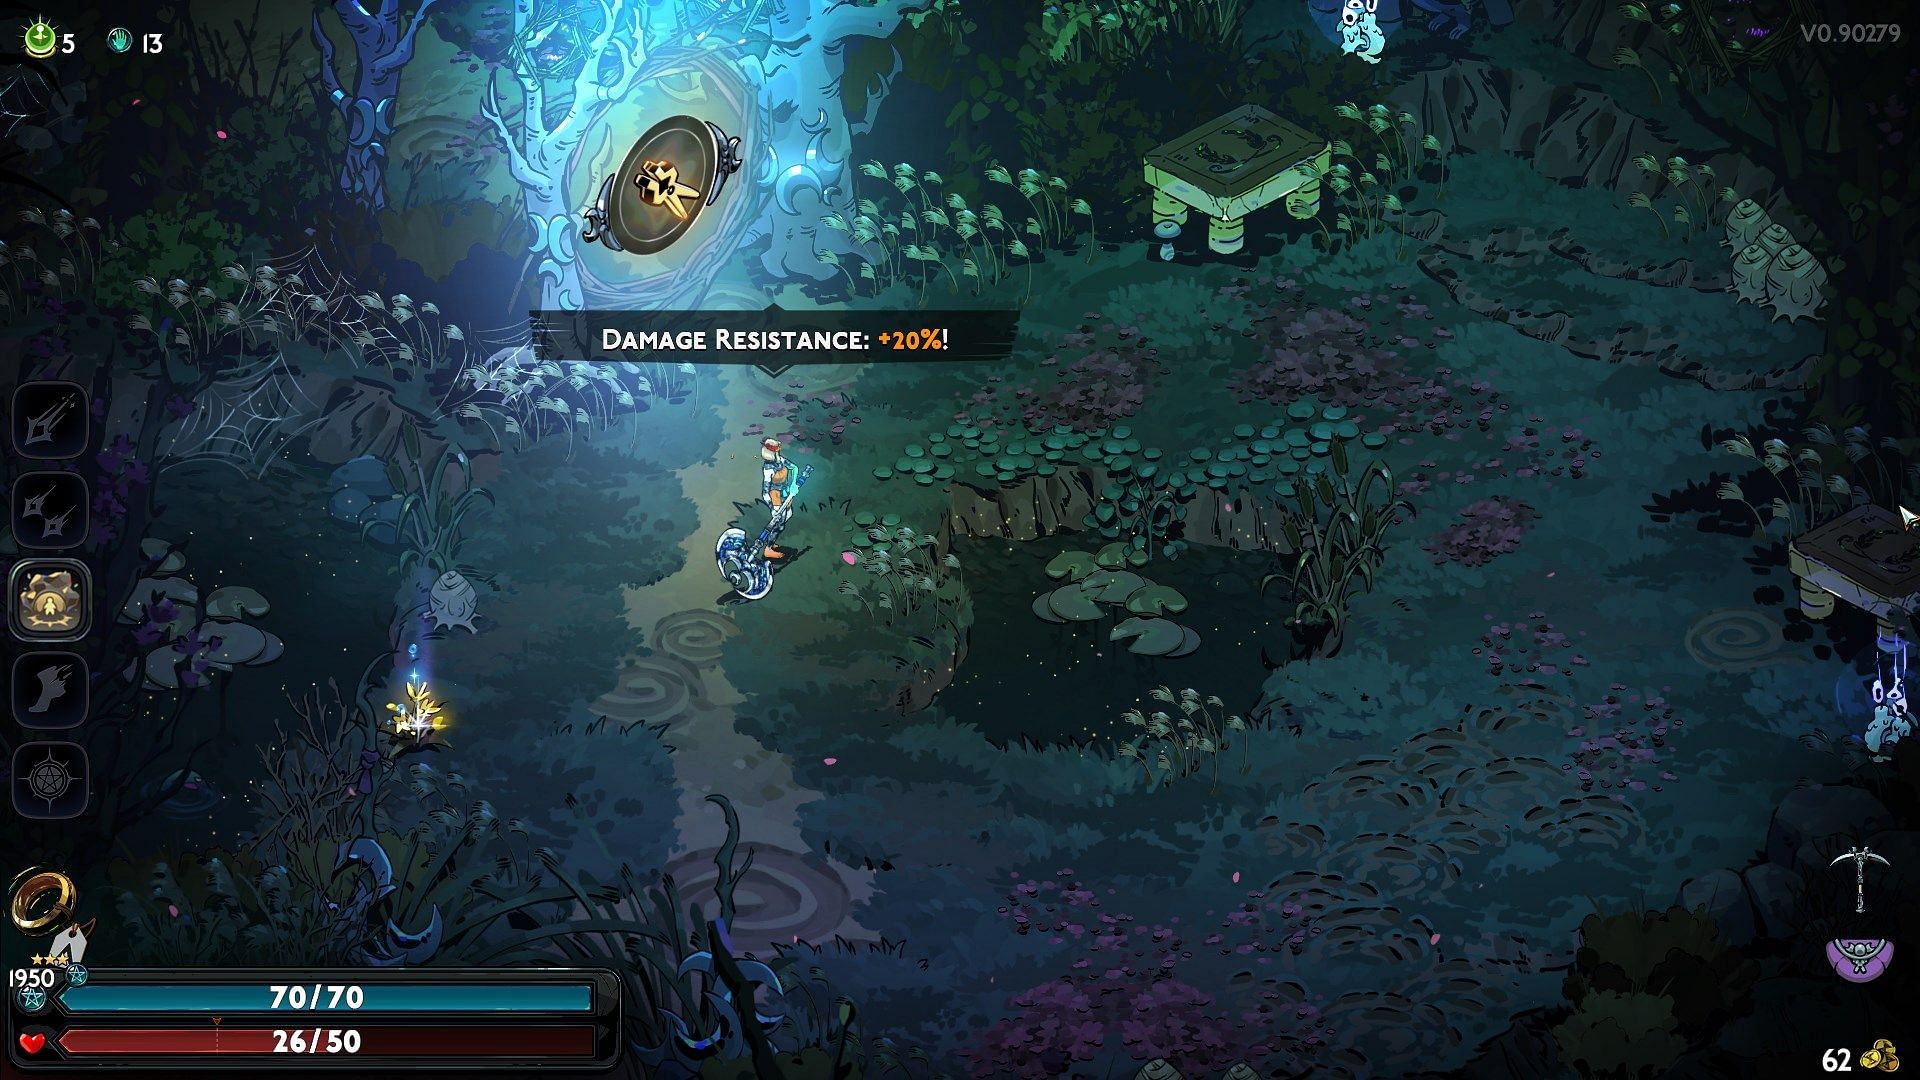 The God Mode gives you bonus damage resistance. (Image via Supergiant Games)